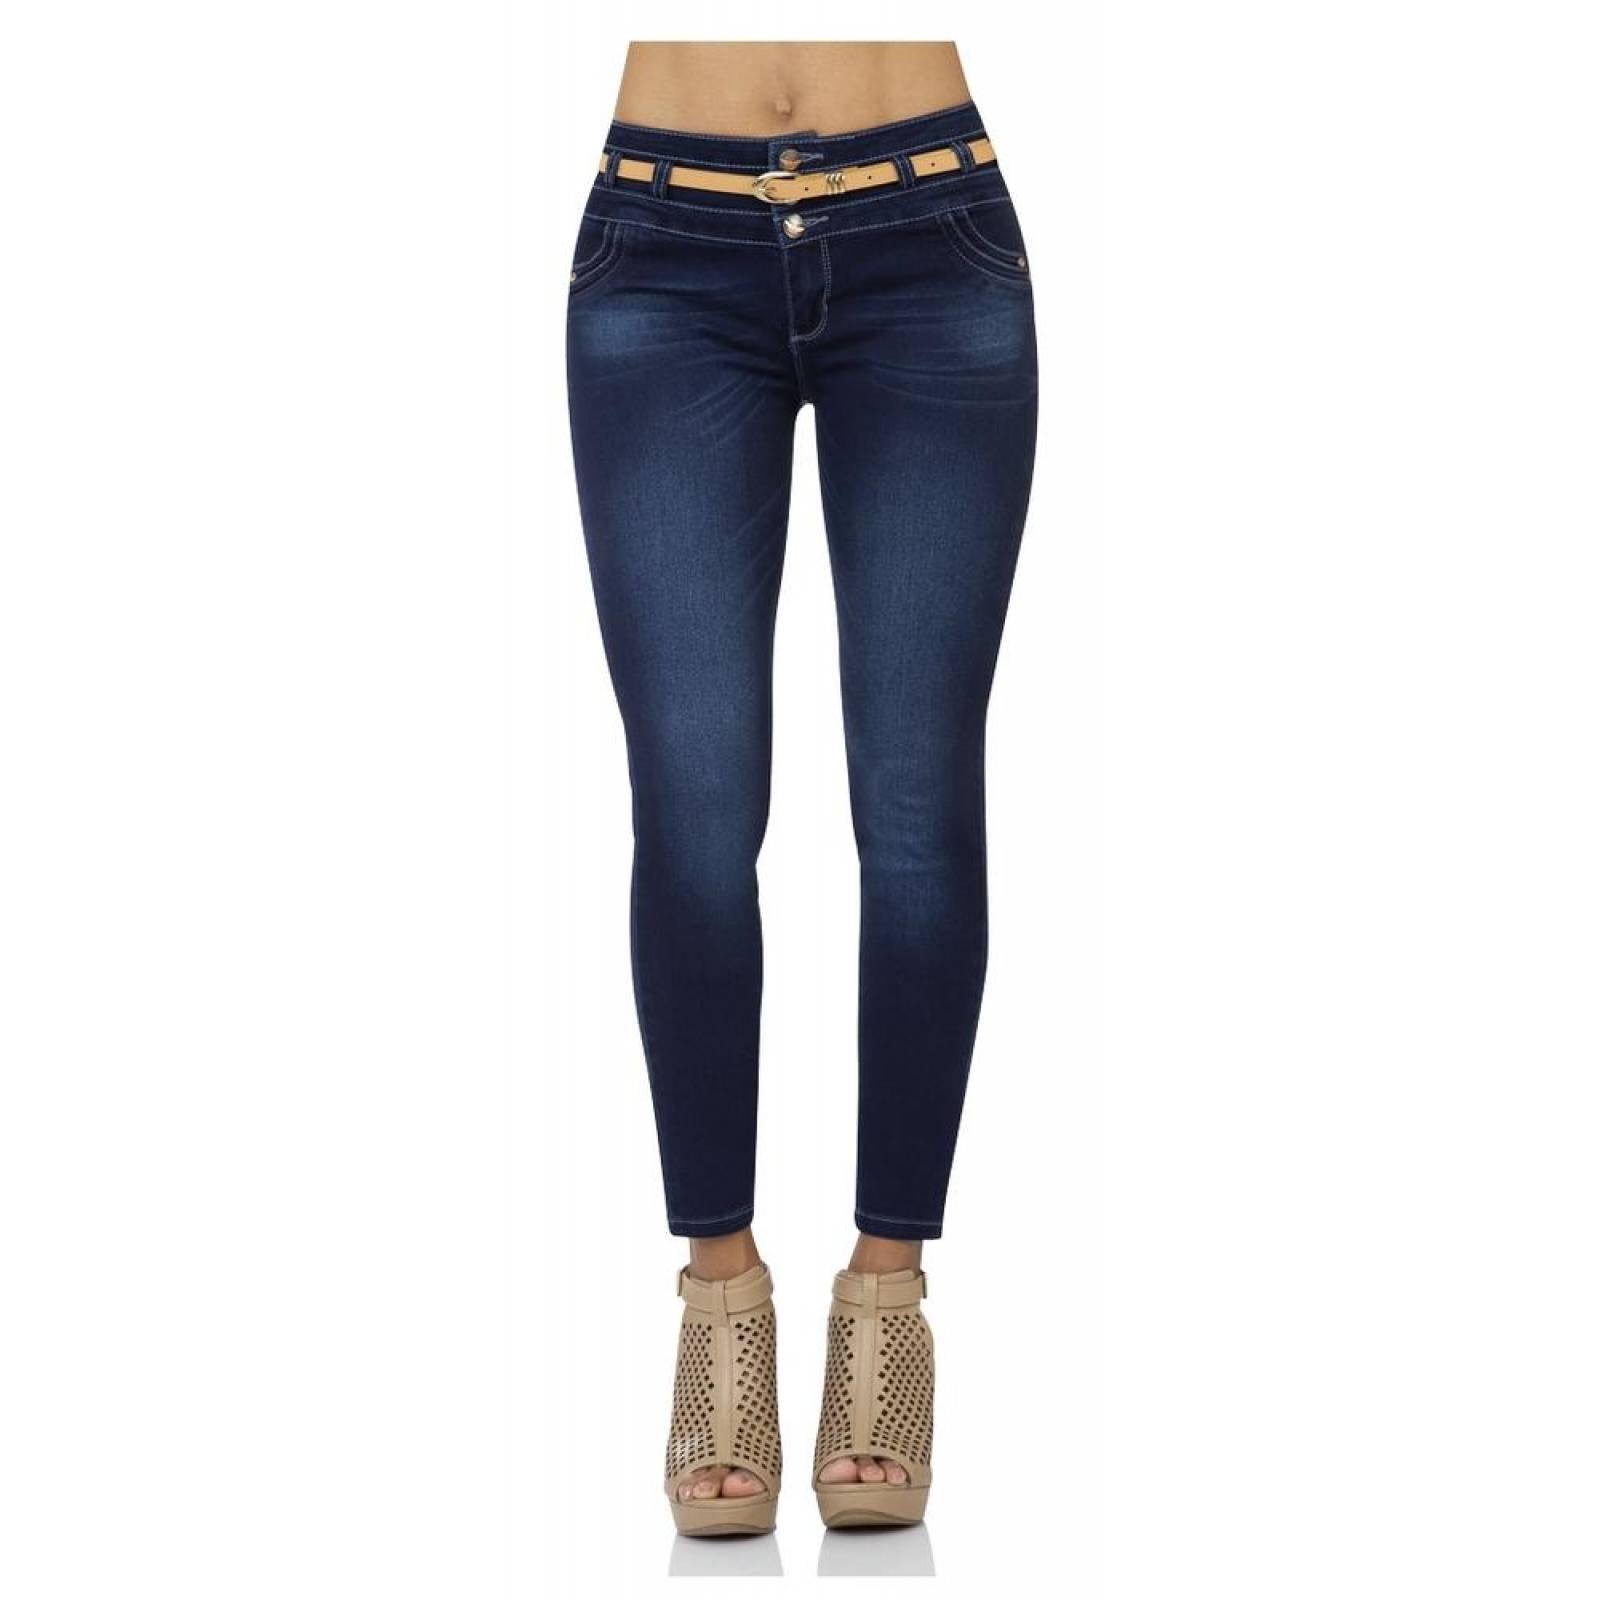 Jeans Moda Mujer Salvaje Tentación Indigo 63103201 Mezclilla Stretch 